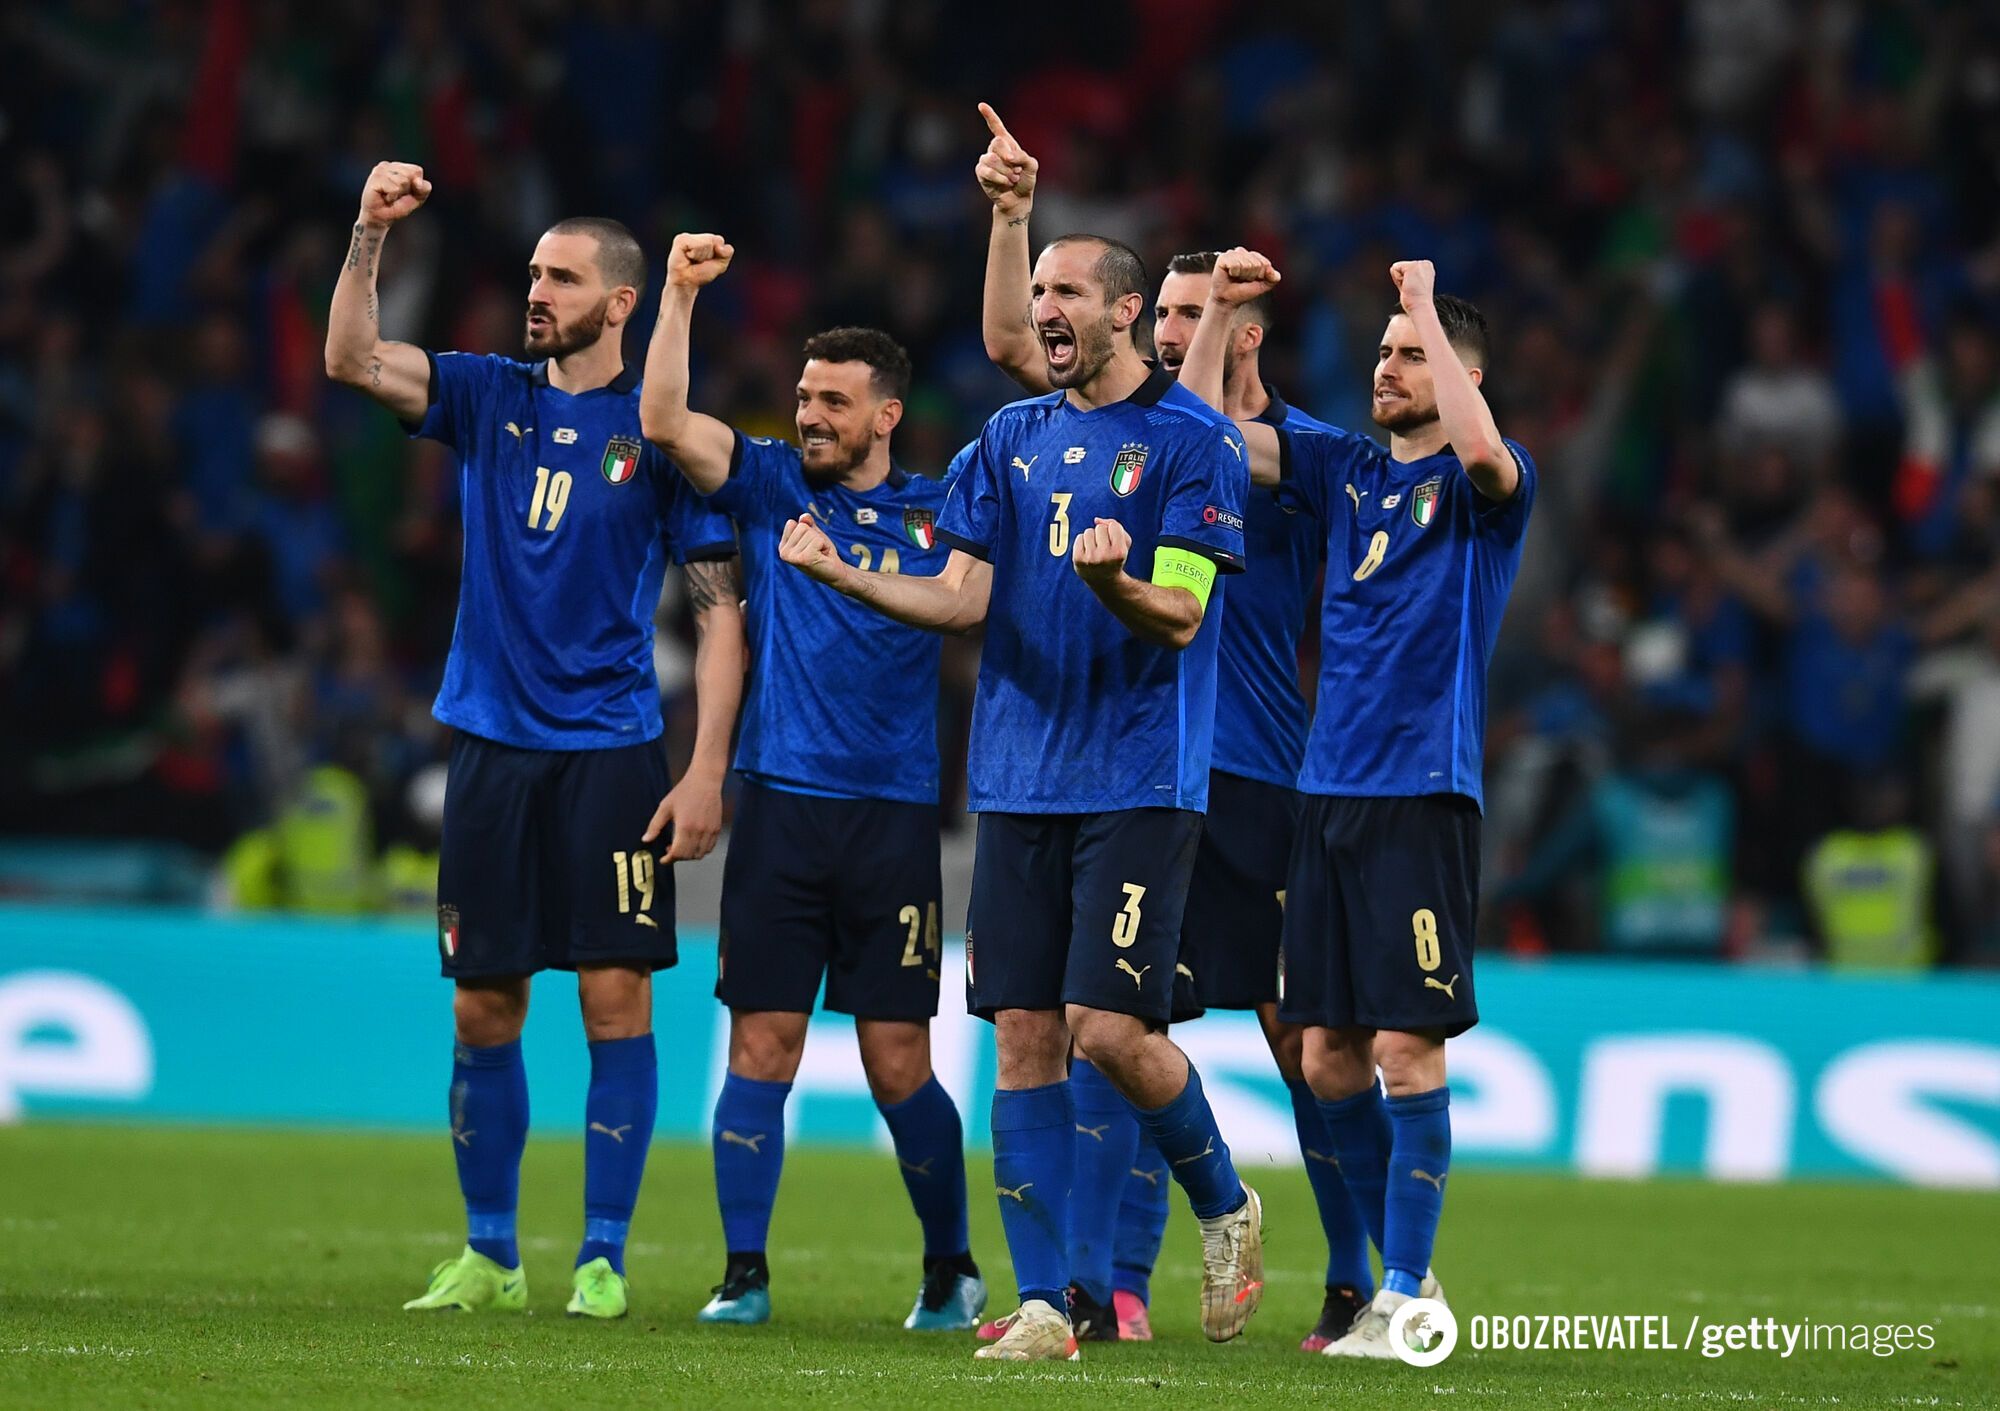 Італія в драматичному фіналі виграла Євро-2020. Відео святкування в Римі та трешу в Лондоні